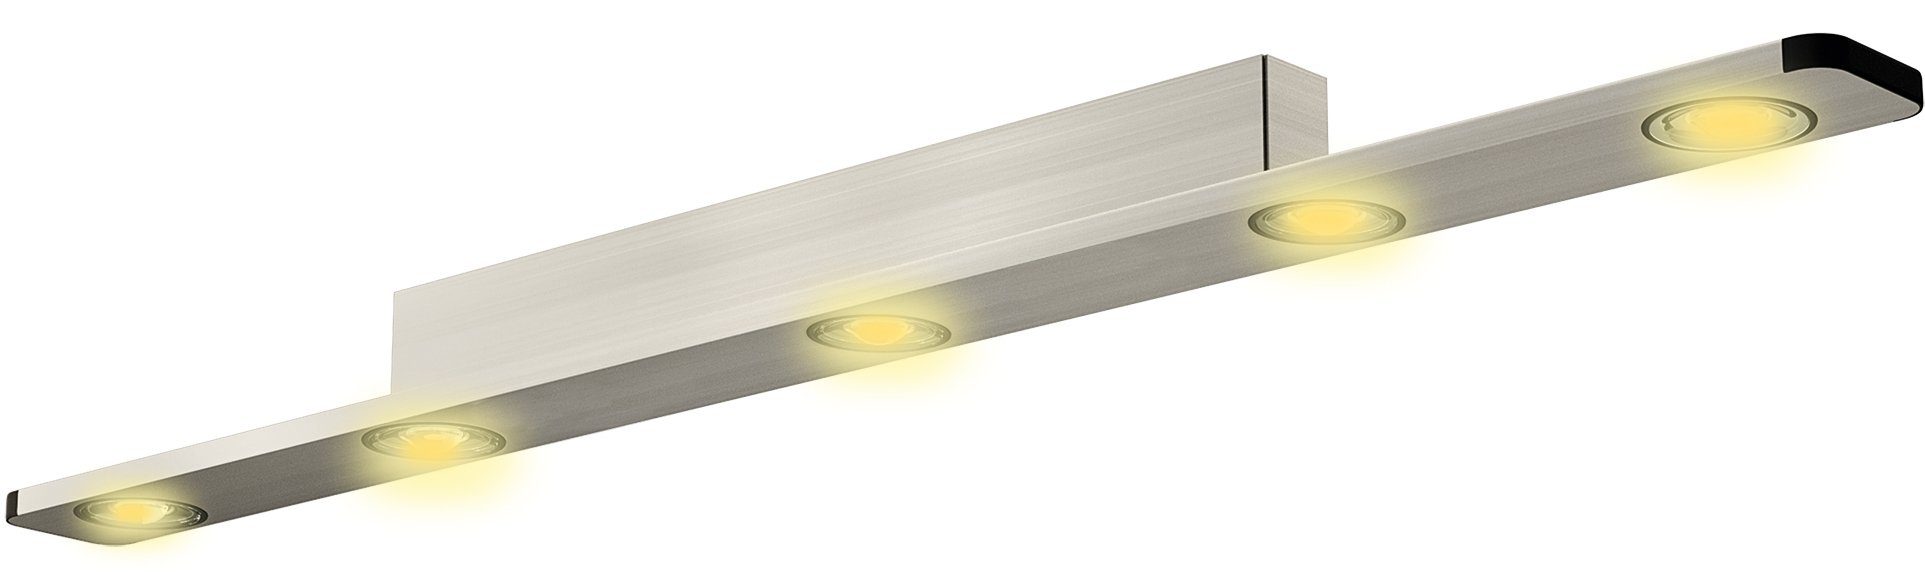 EVOTEC LED Deckenleuchte LIGHT WAVE, Dimmfunktion, LED fest integriert, LED Deckenlampe | Deckenlampen